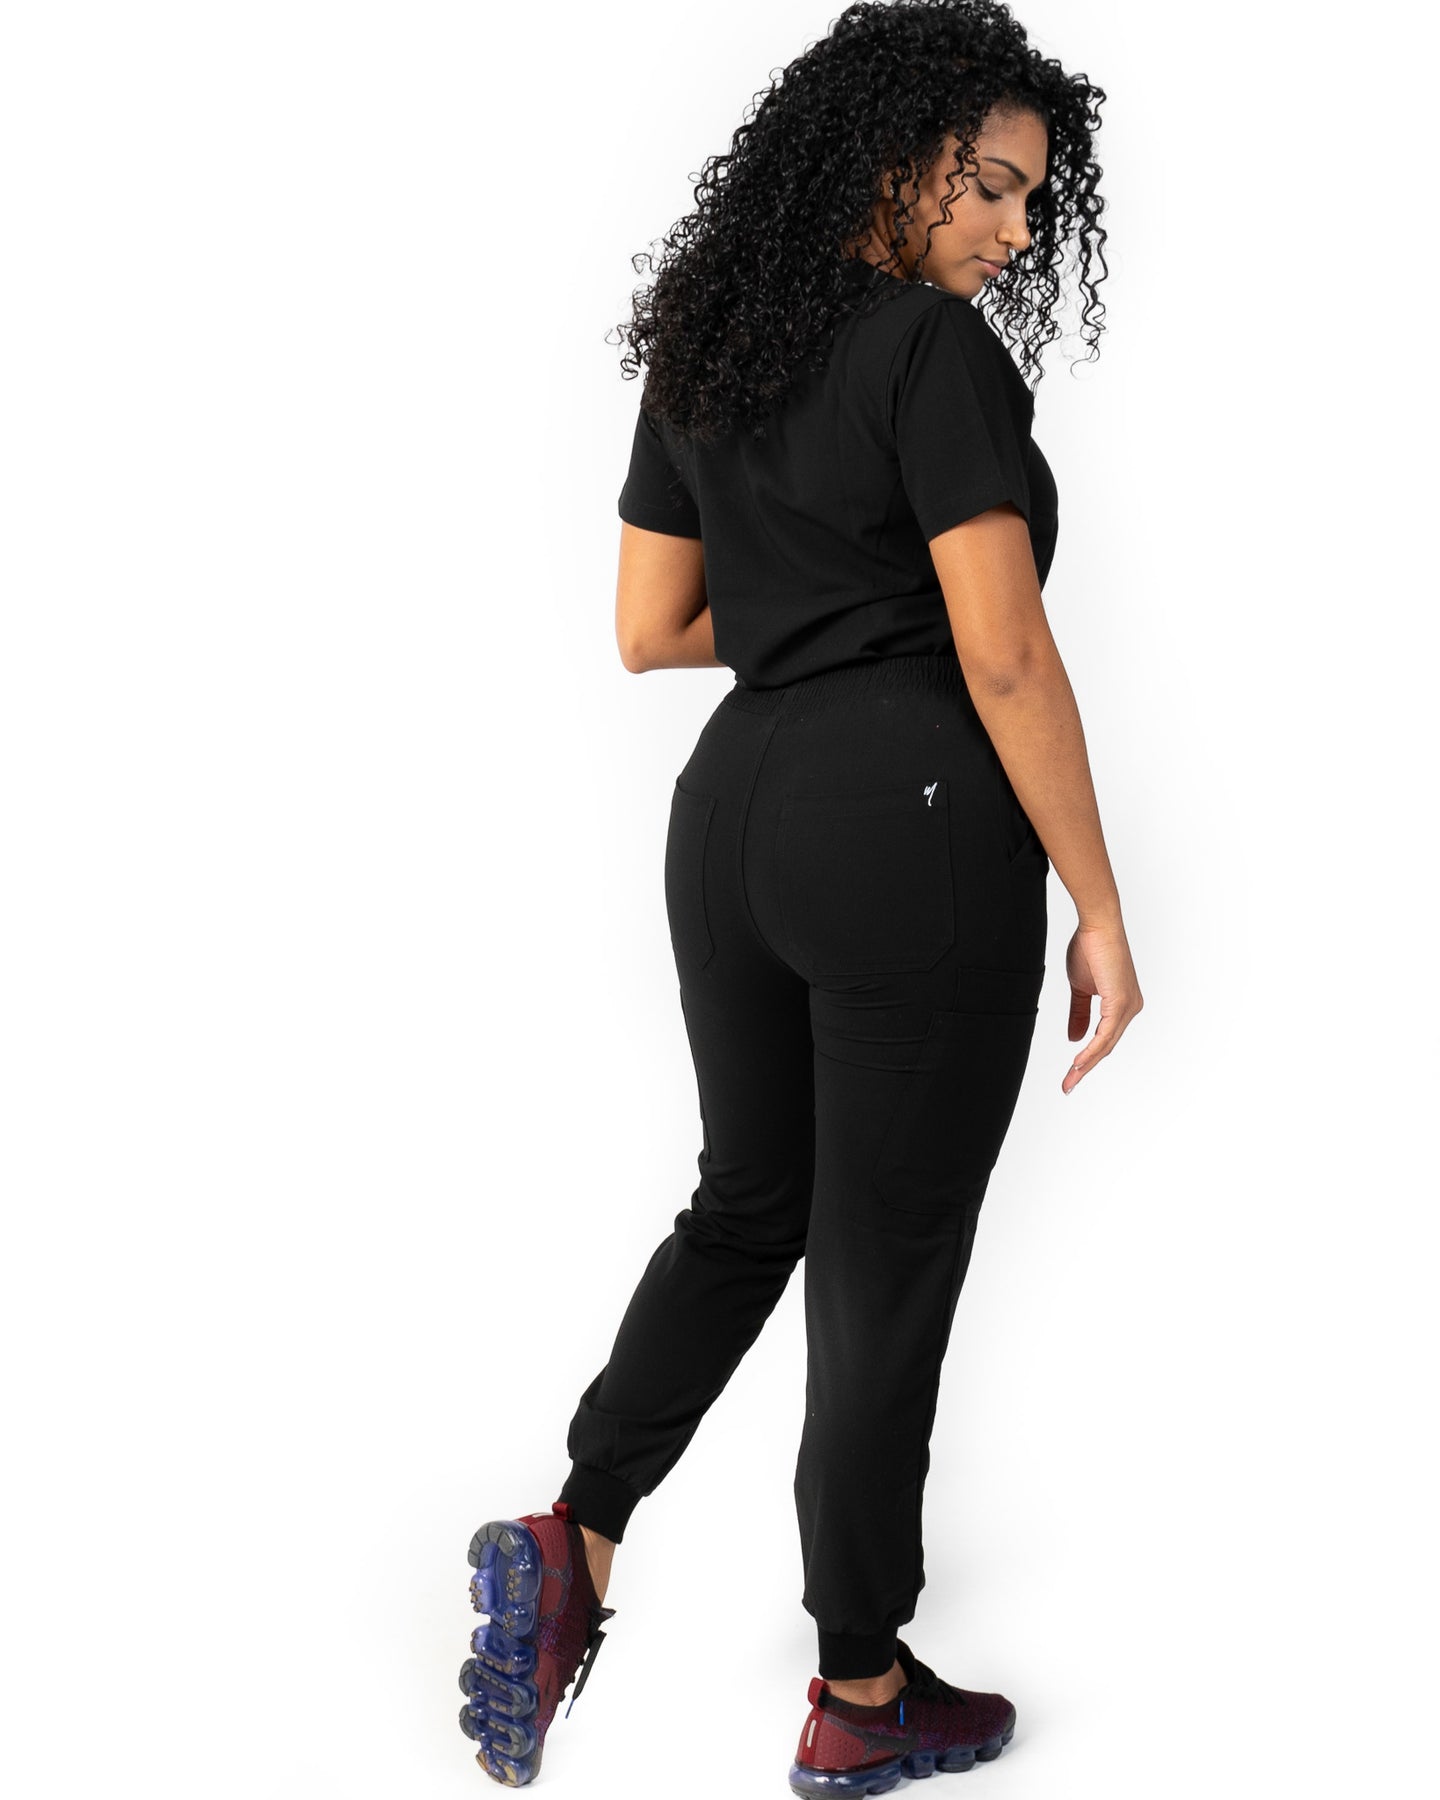 Mid Rise Tall Women's Jogger Scrub Pants Black DK155T-BLK - The Nursing  Store Inc.